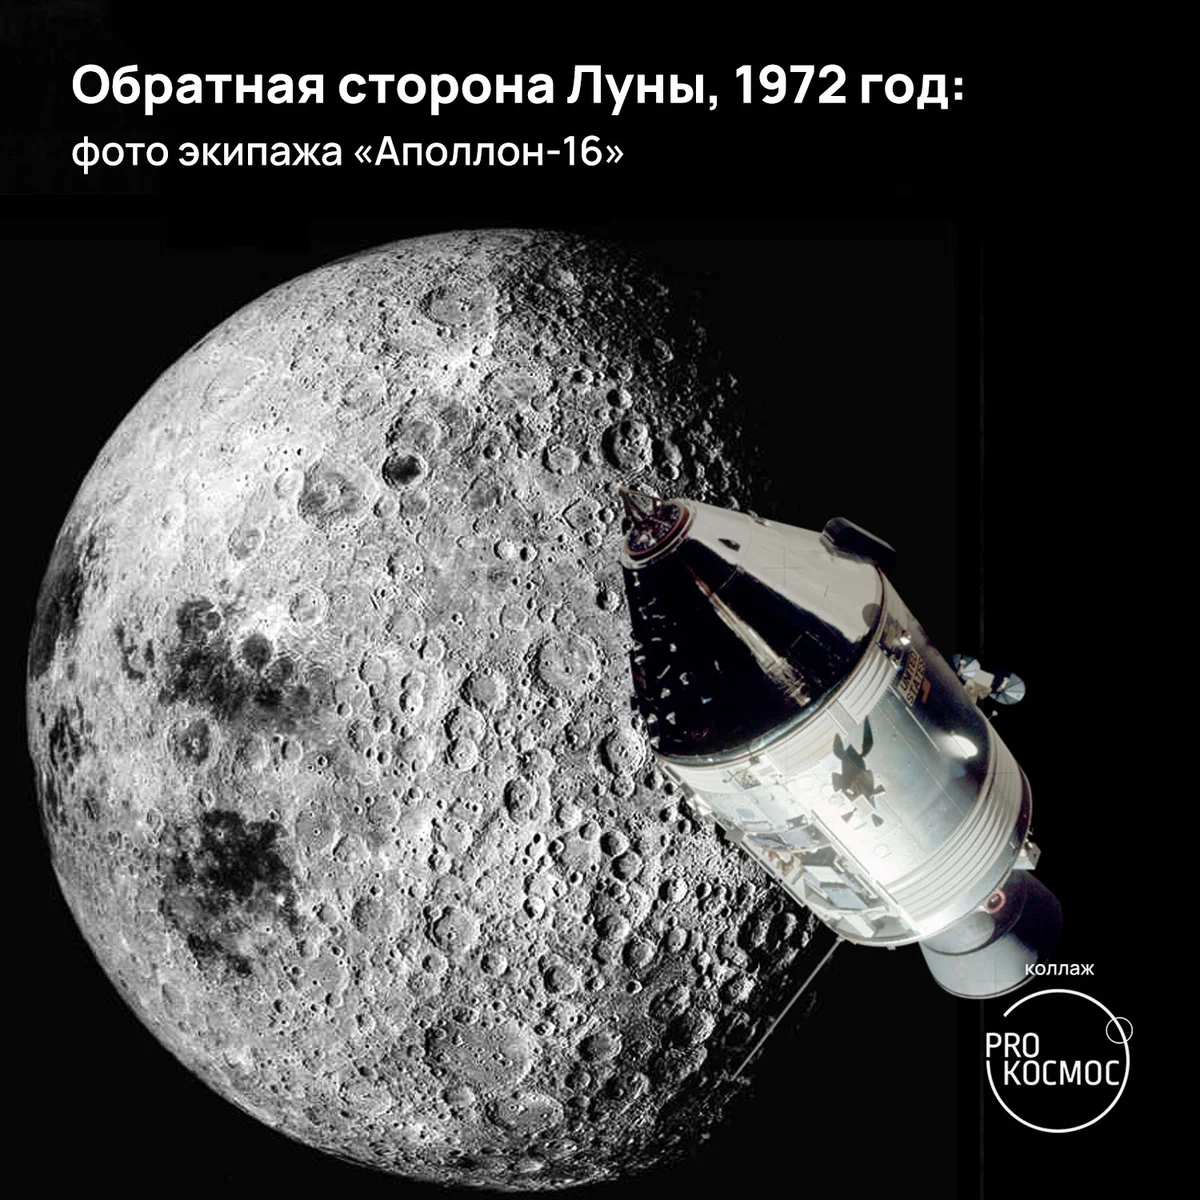 The Dark Side of the Moon: как земляне впервые увидели обратную сторону Луны благодаря советскому космическому аппарату height=1200px width=1200px